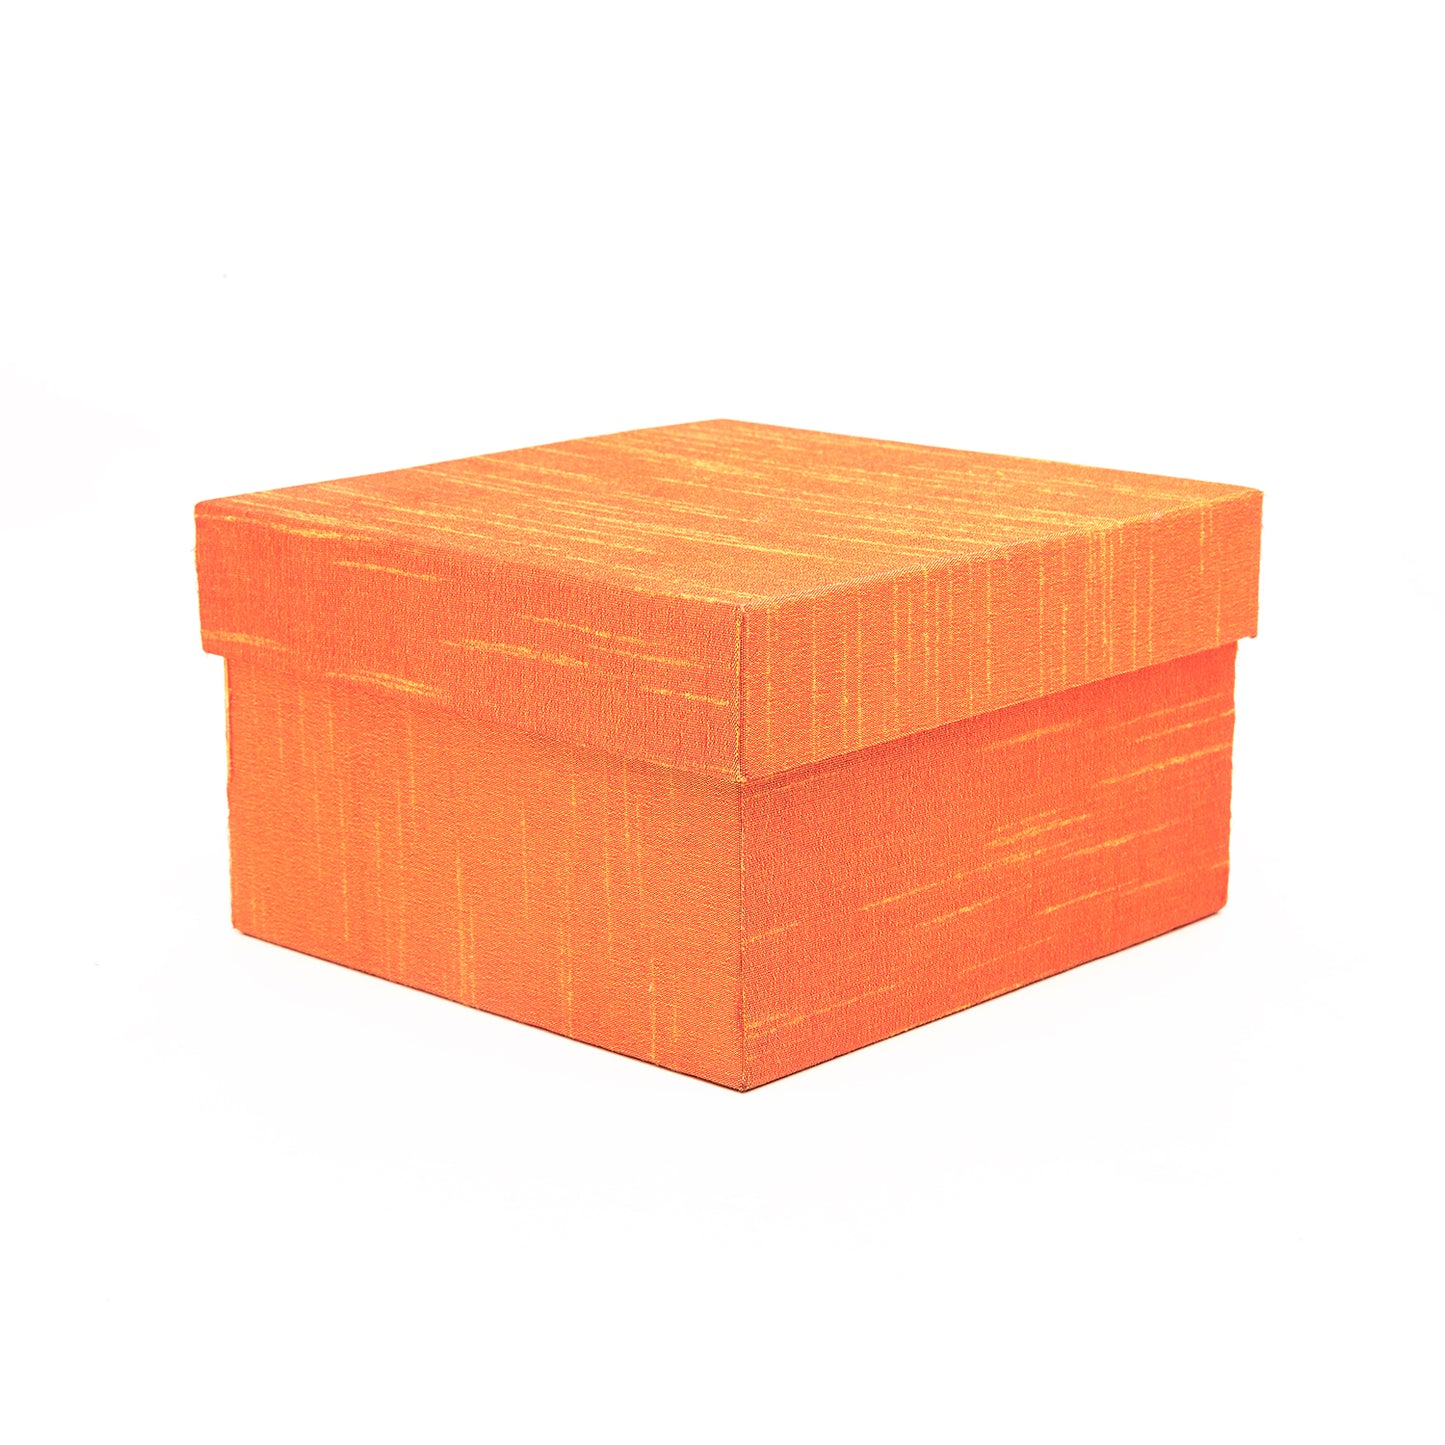 Tiger Orange - Gift Box Set of 5